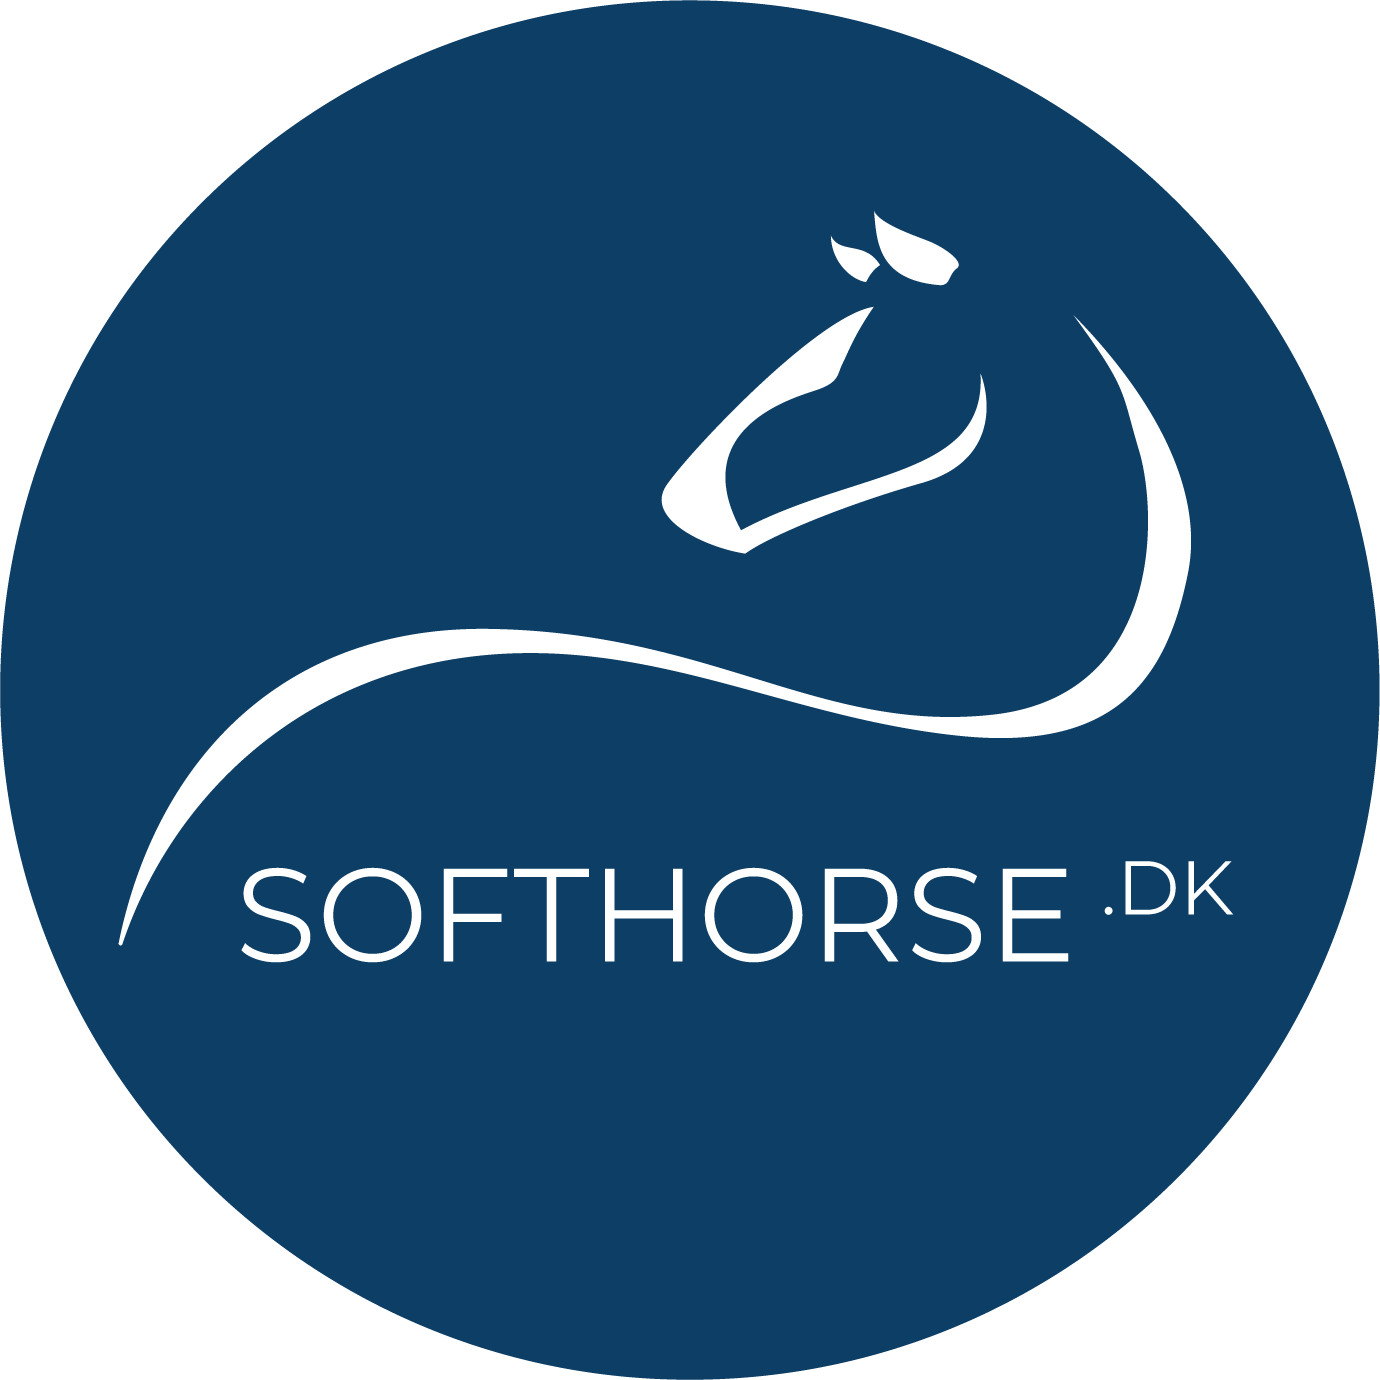 Softhorse logo